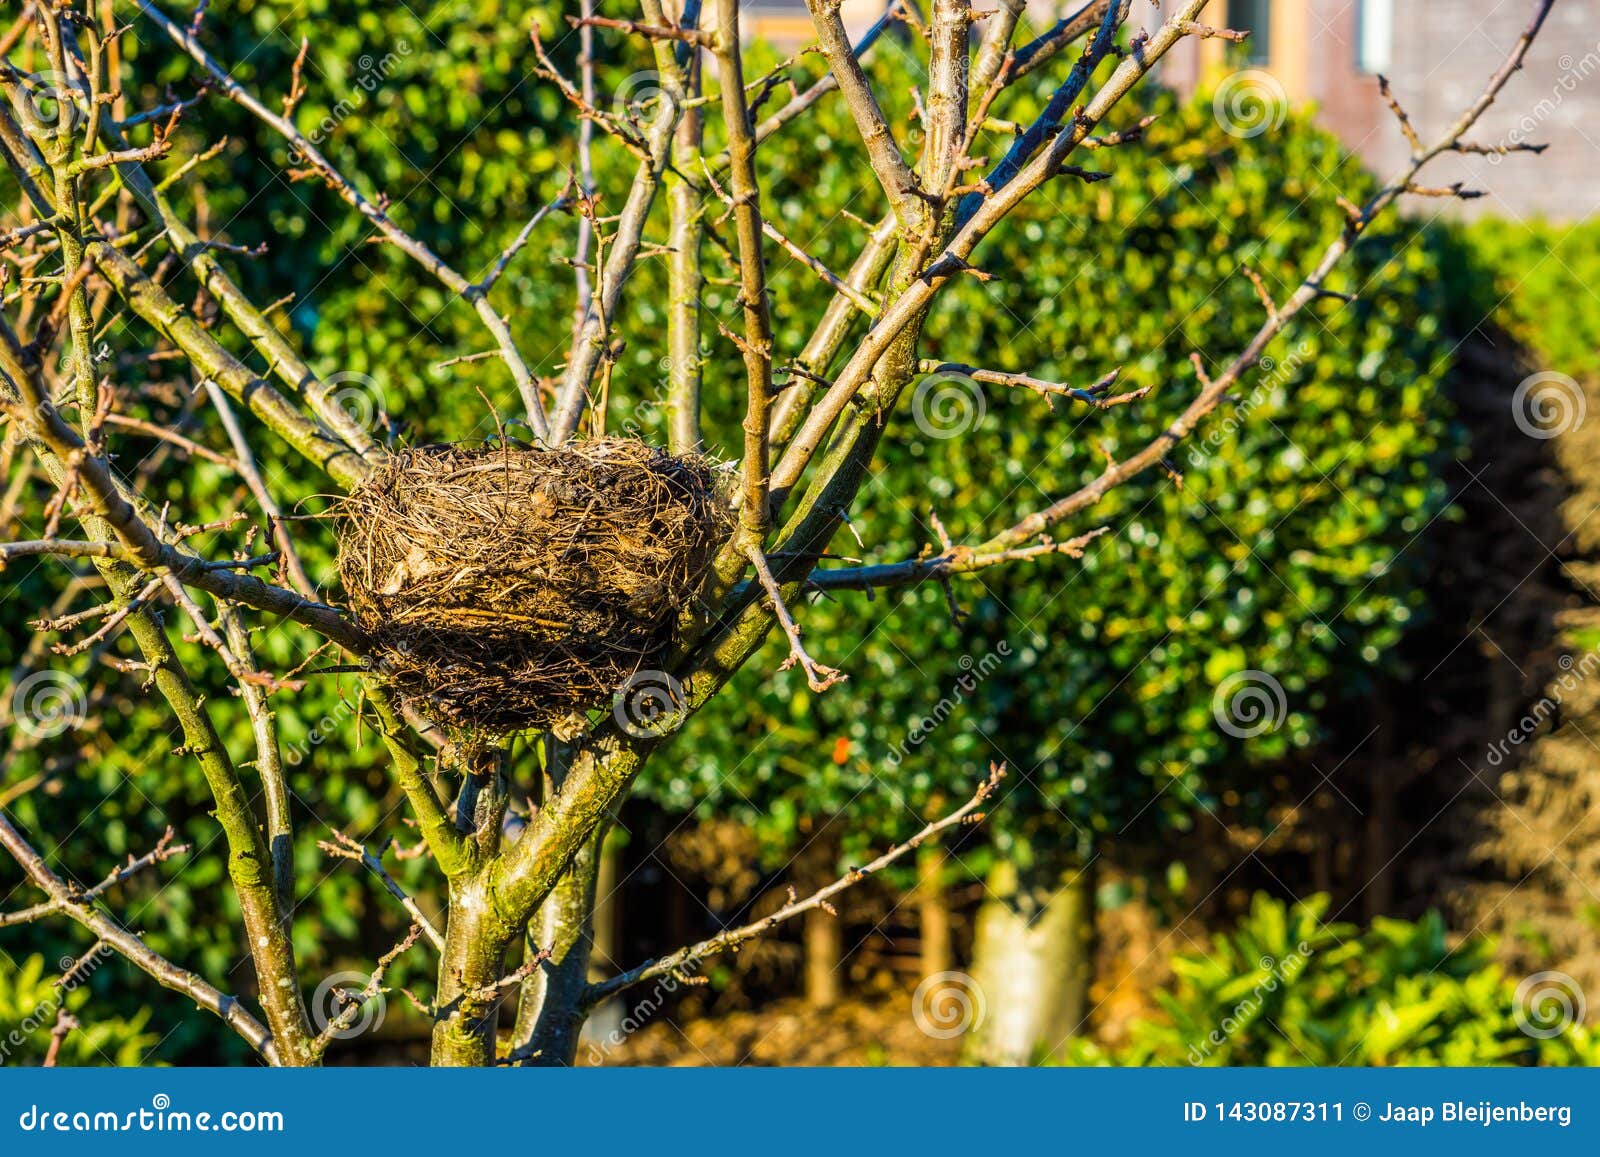 Birds Nest in a Tree in the Garden, Spring Season, Bird Home, Animal